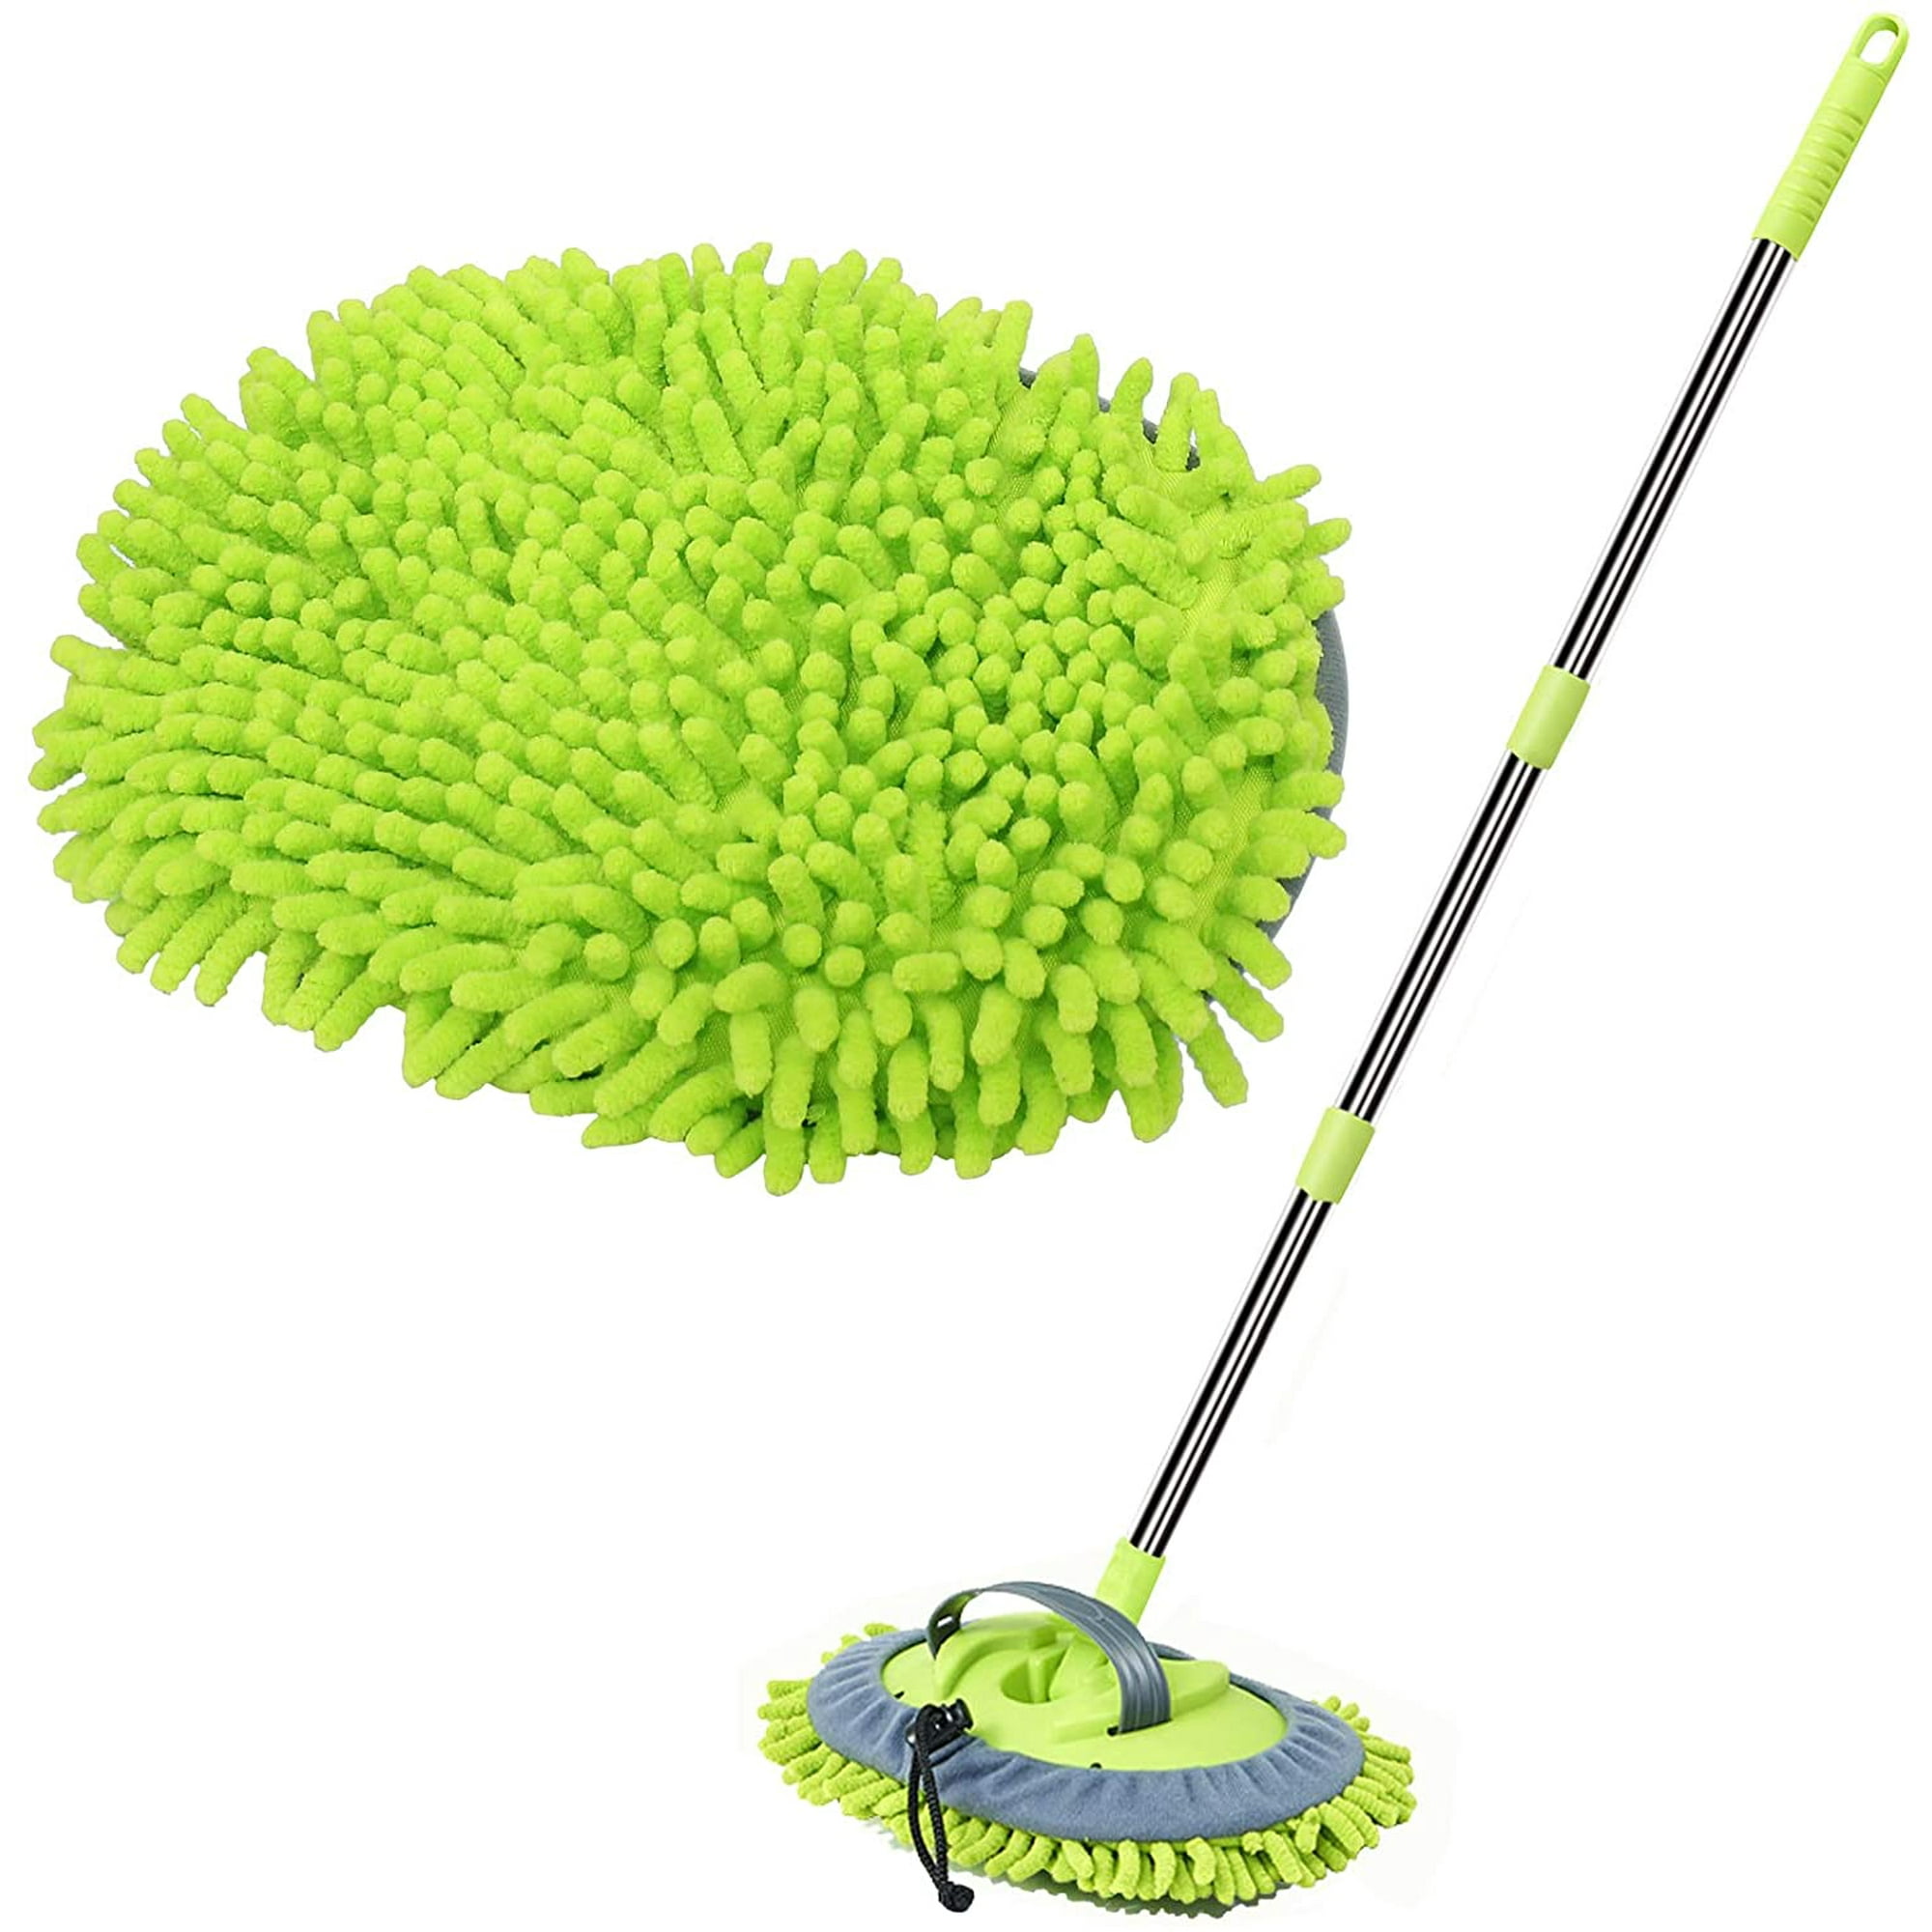 Comprar Cepillos de lavado de coches de microfibra con mango ajustable  cepillo de limpieza de coche escalable cuidado lavadora limpia